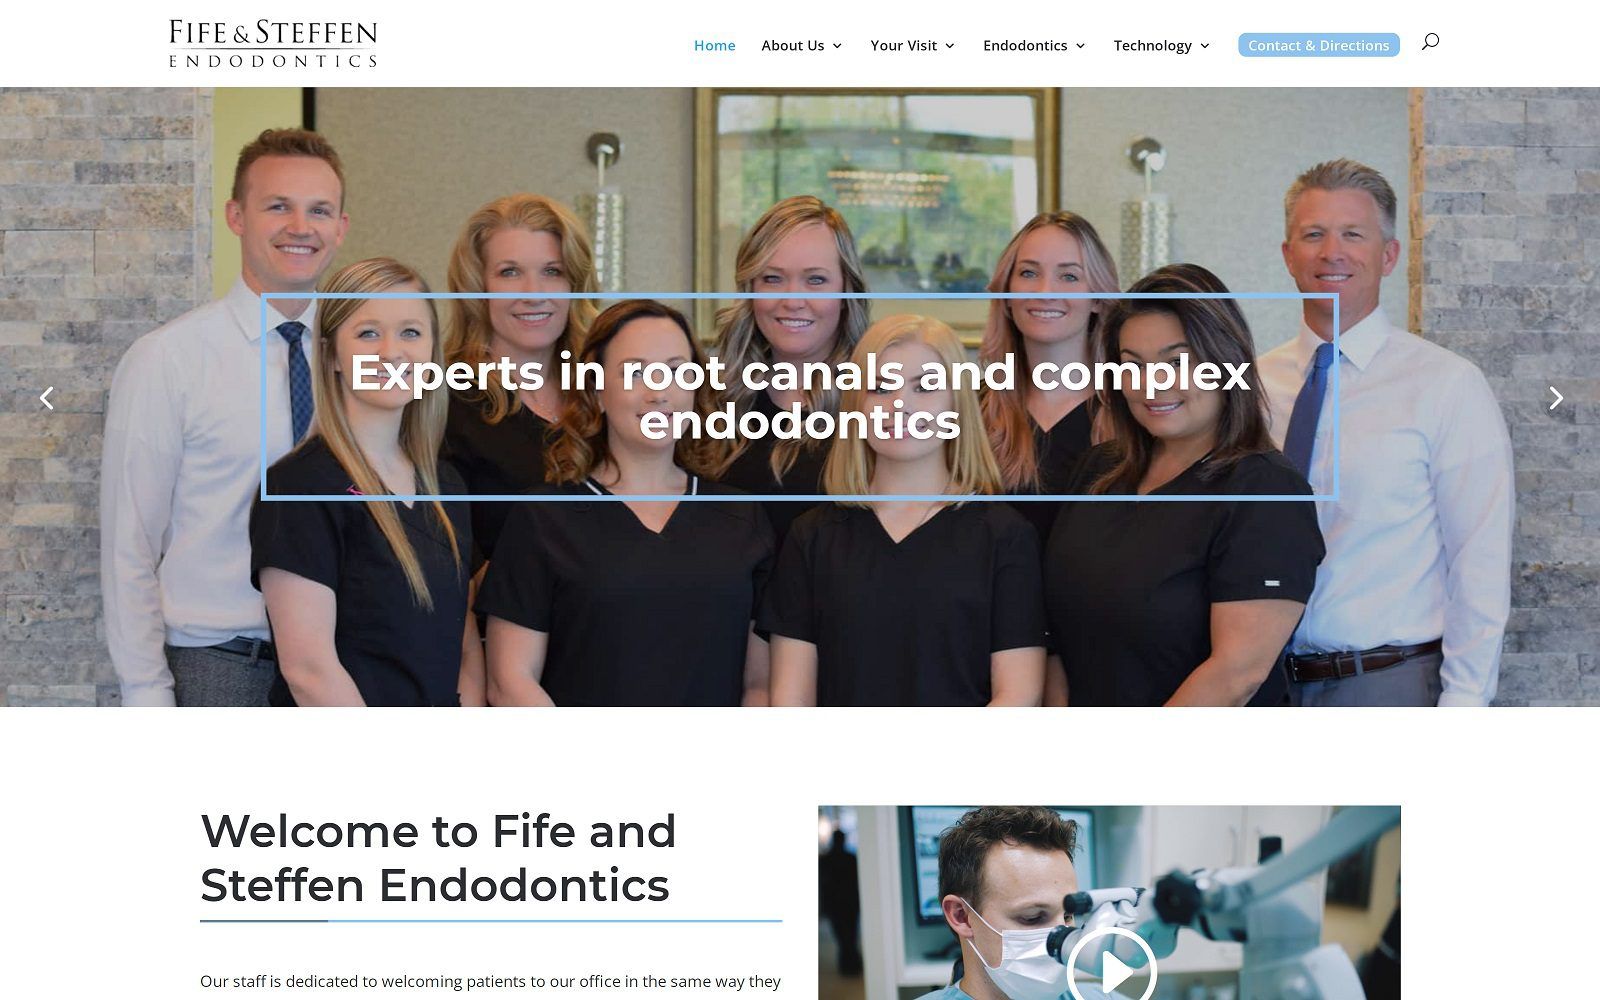 The screenshot of fife and steffen endodontics website